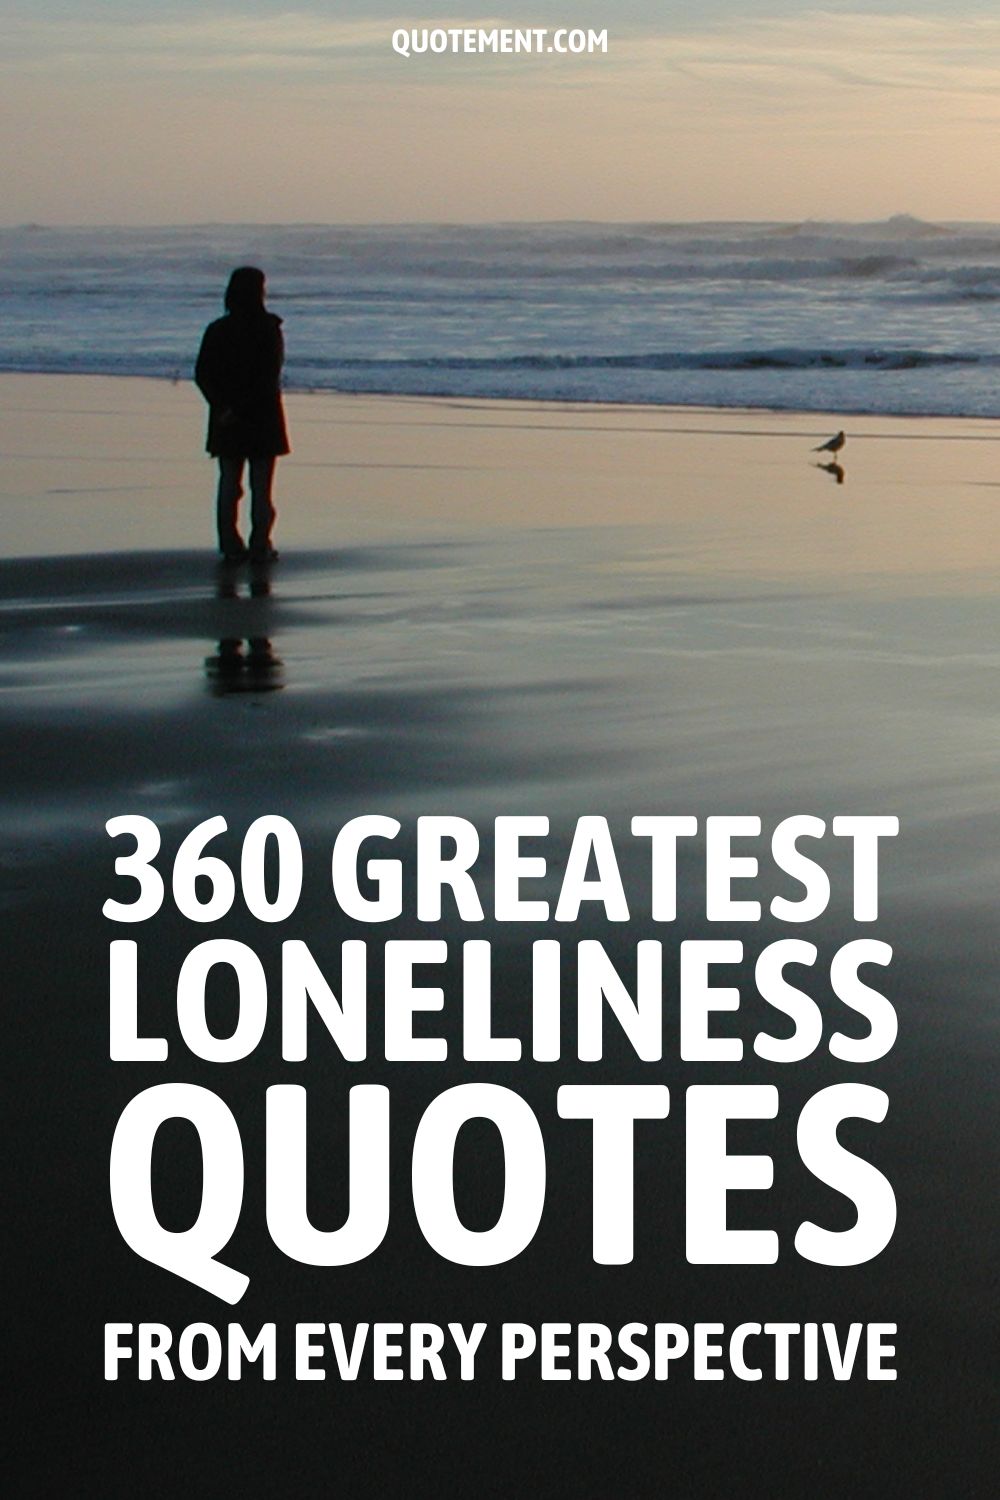 360 frases sobre la soledad desde todas las perspectivas